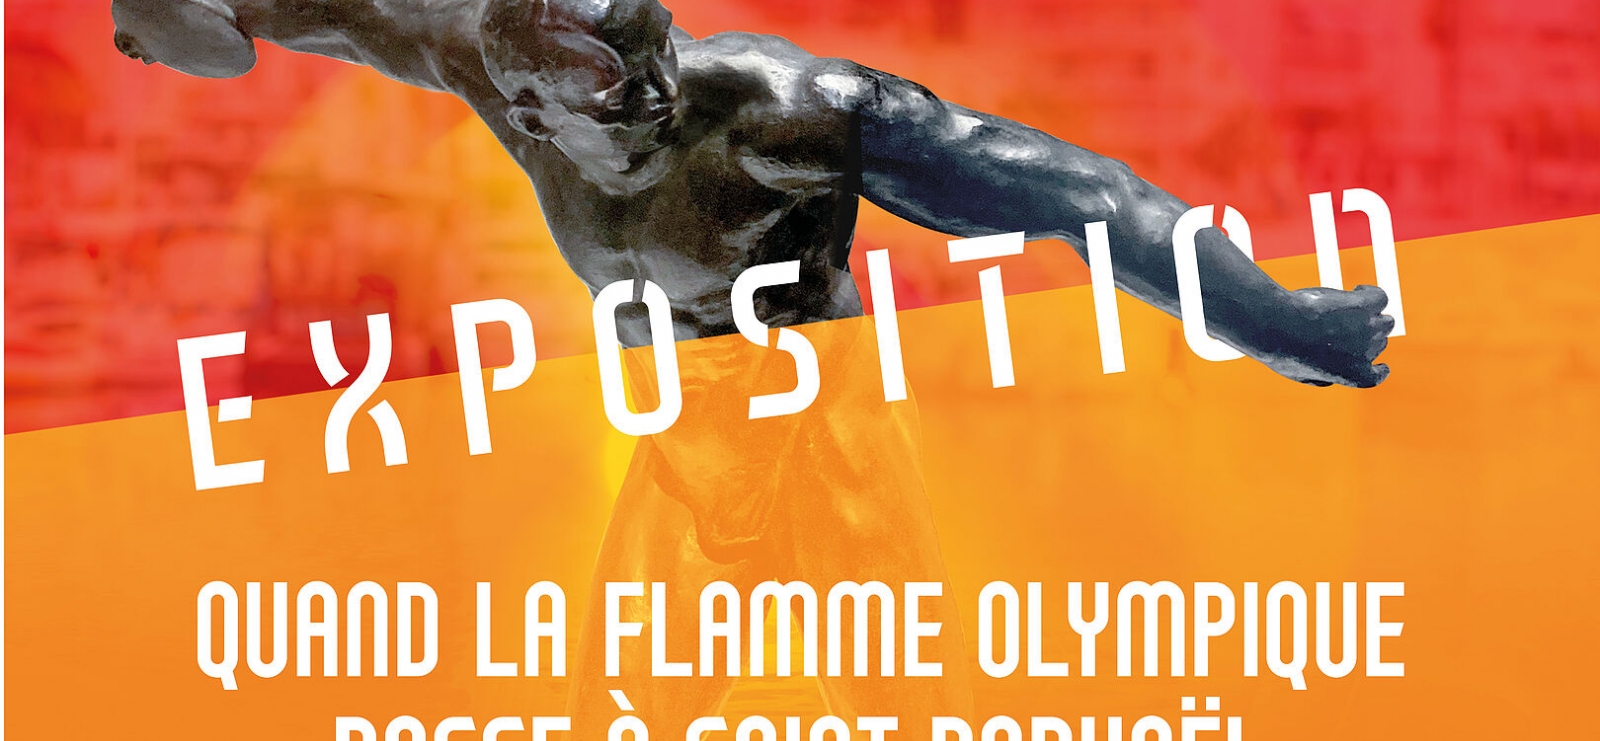 Exposition « Quand la flamme olympique passe à Saint-Raphaël »